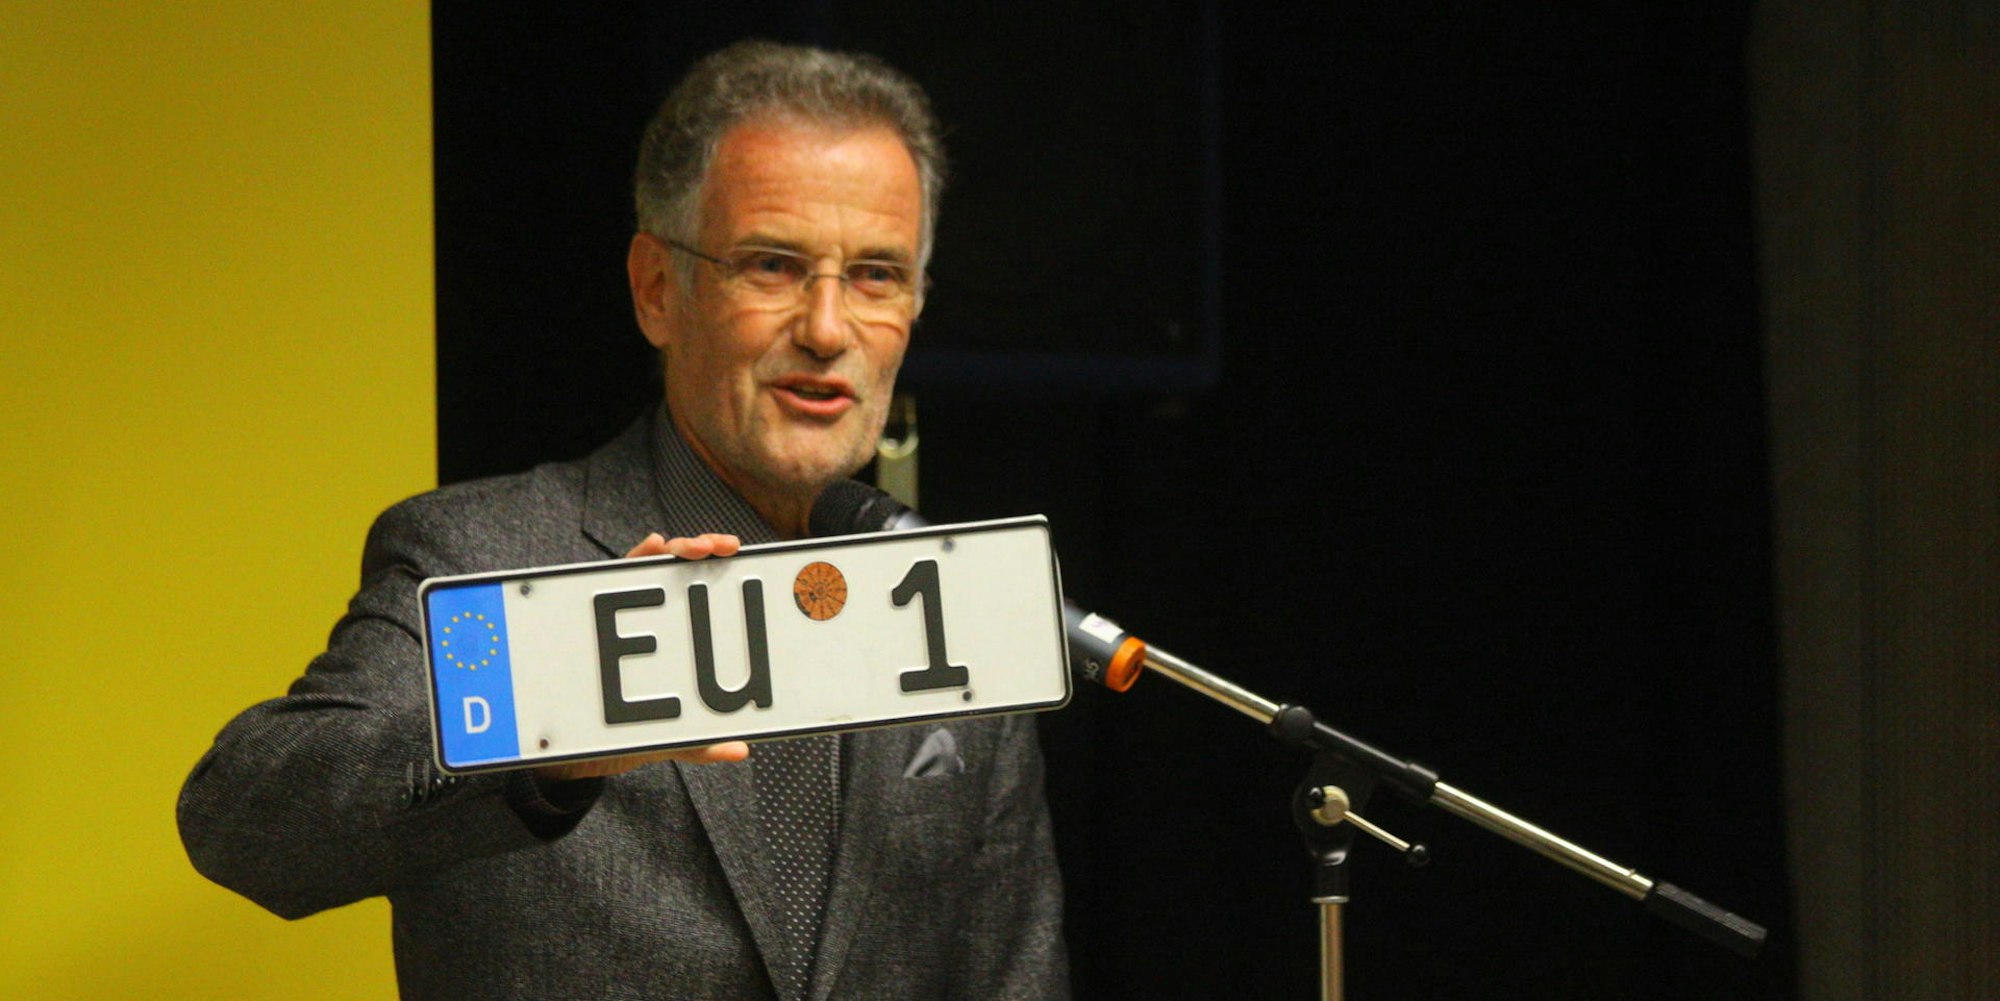 Viermal wurde Uwe Friedl zum Bürgermeister gewählt. 2020 tritt er nicht mehr an.